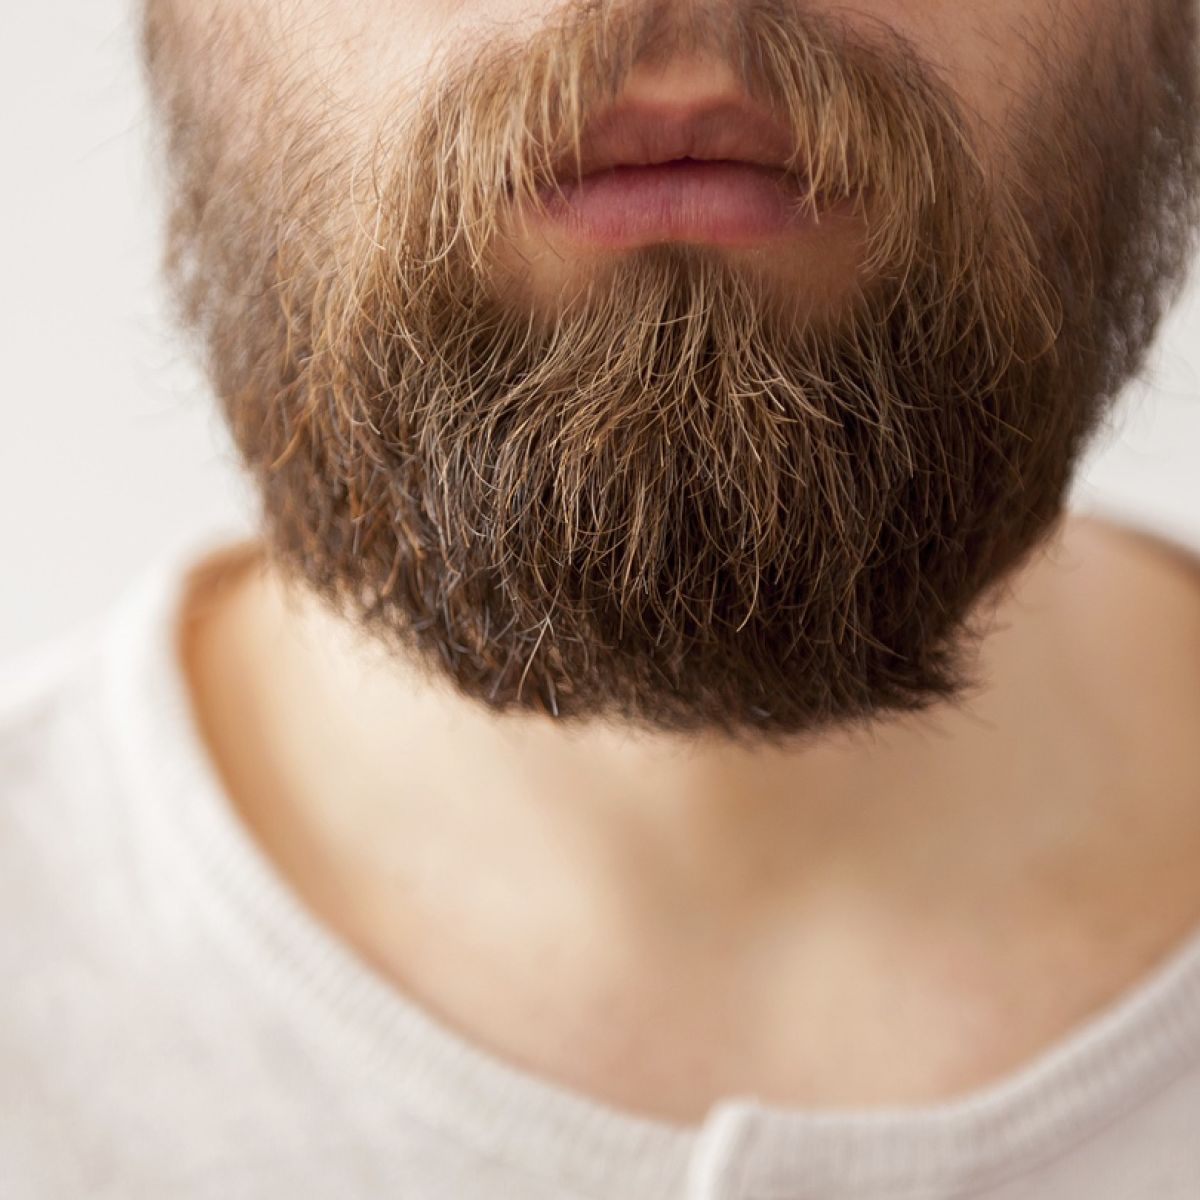 Why do men grow beards after a break up